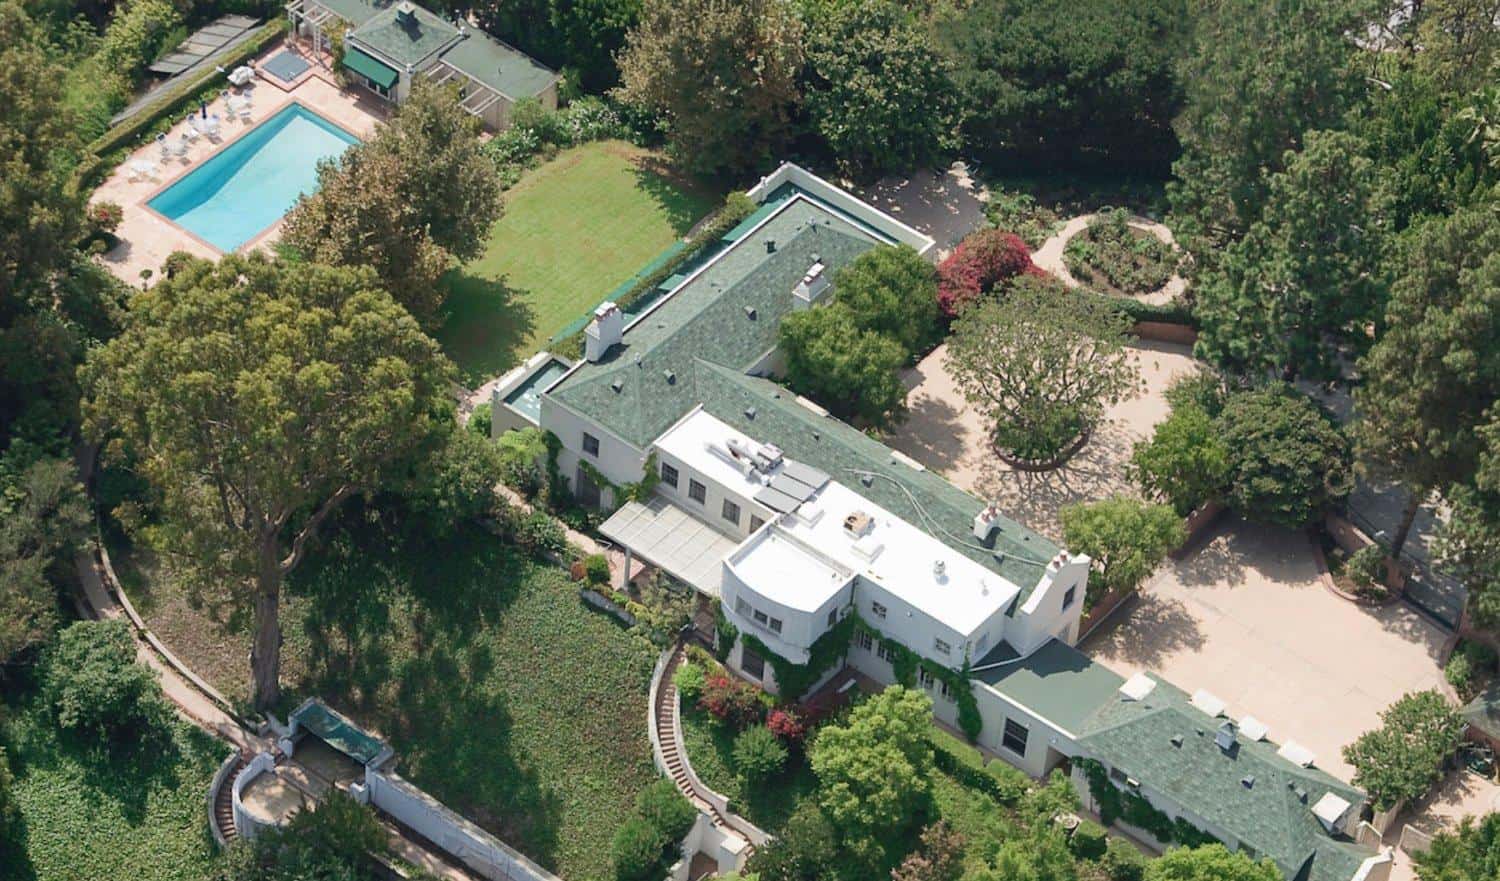 Góc nhìn từ trên cao xuống tại căn biệt thự của Taylor Swift.